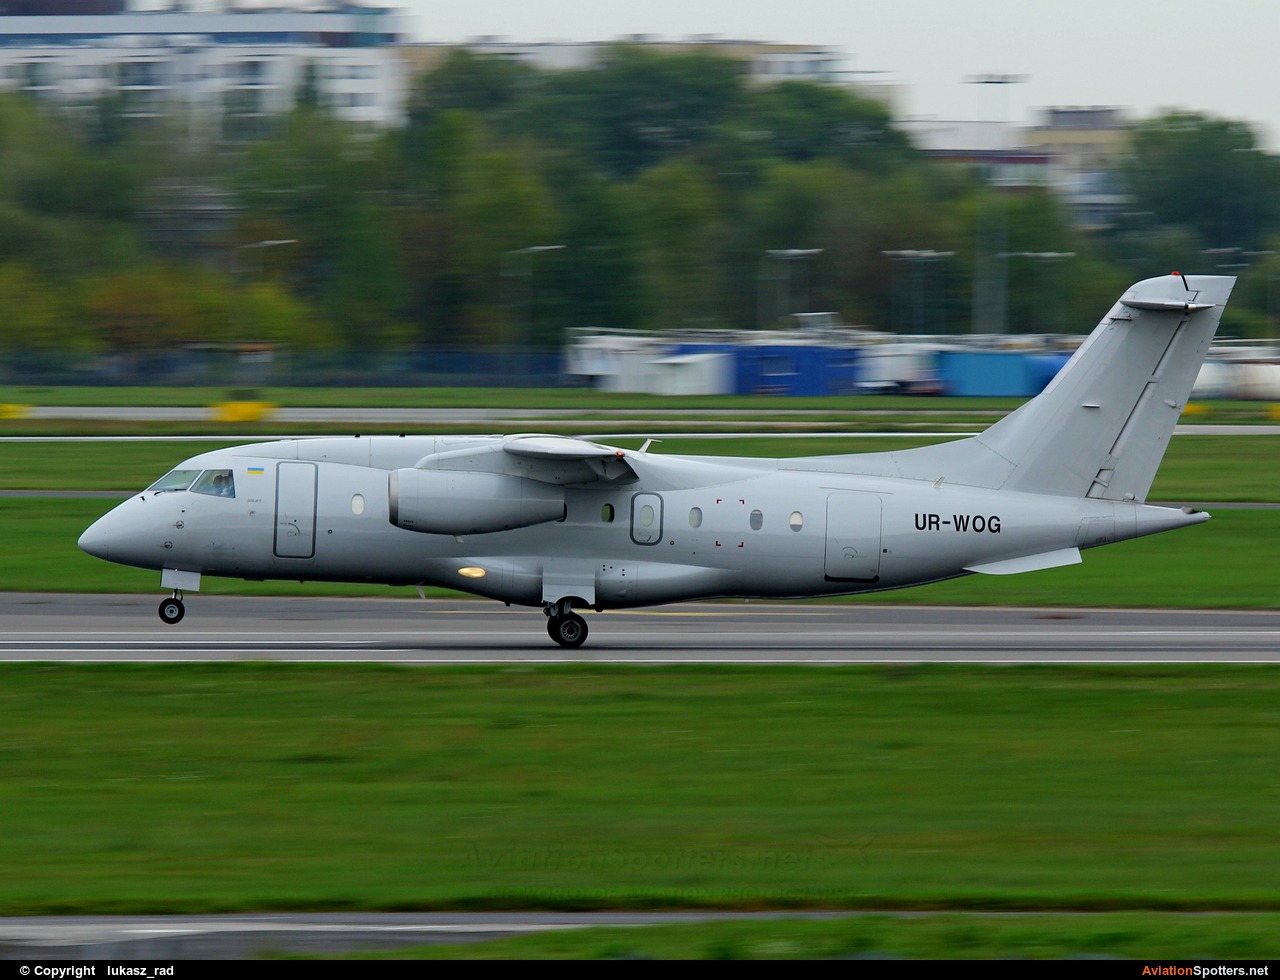 Aerostar  -  Do.328  (UR-WOG) By lukasz_rad (lukasz_rad)